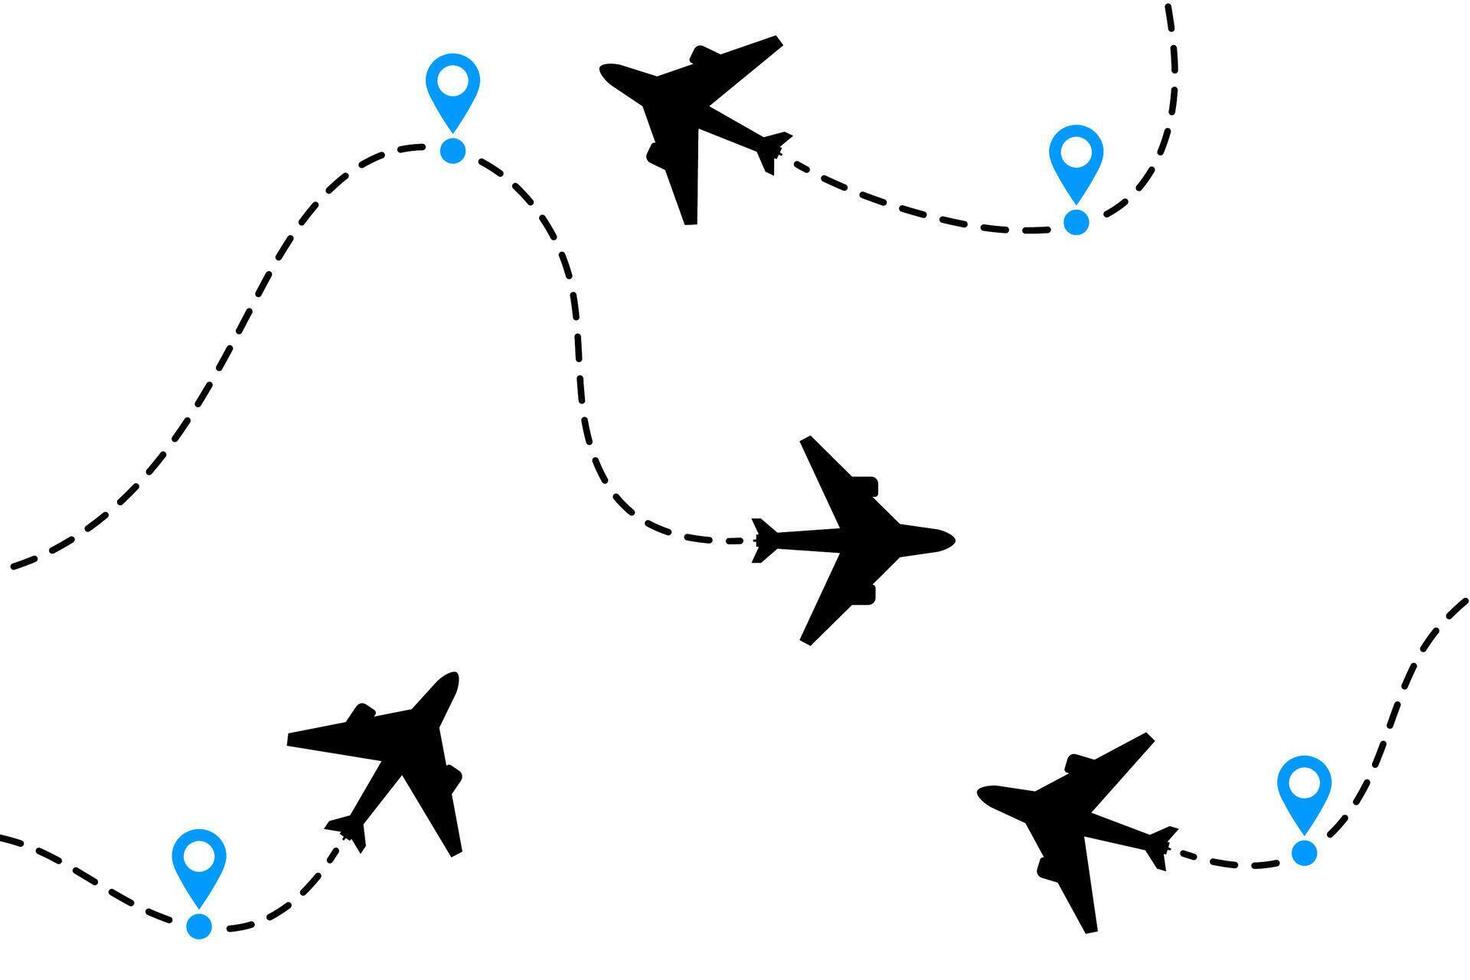 aereo aria volo sentiero. aereo viaggio elementi con viaggio perno carta geografica. silhouette di aereo icona nel volo carta geografica vettore